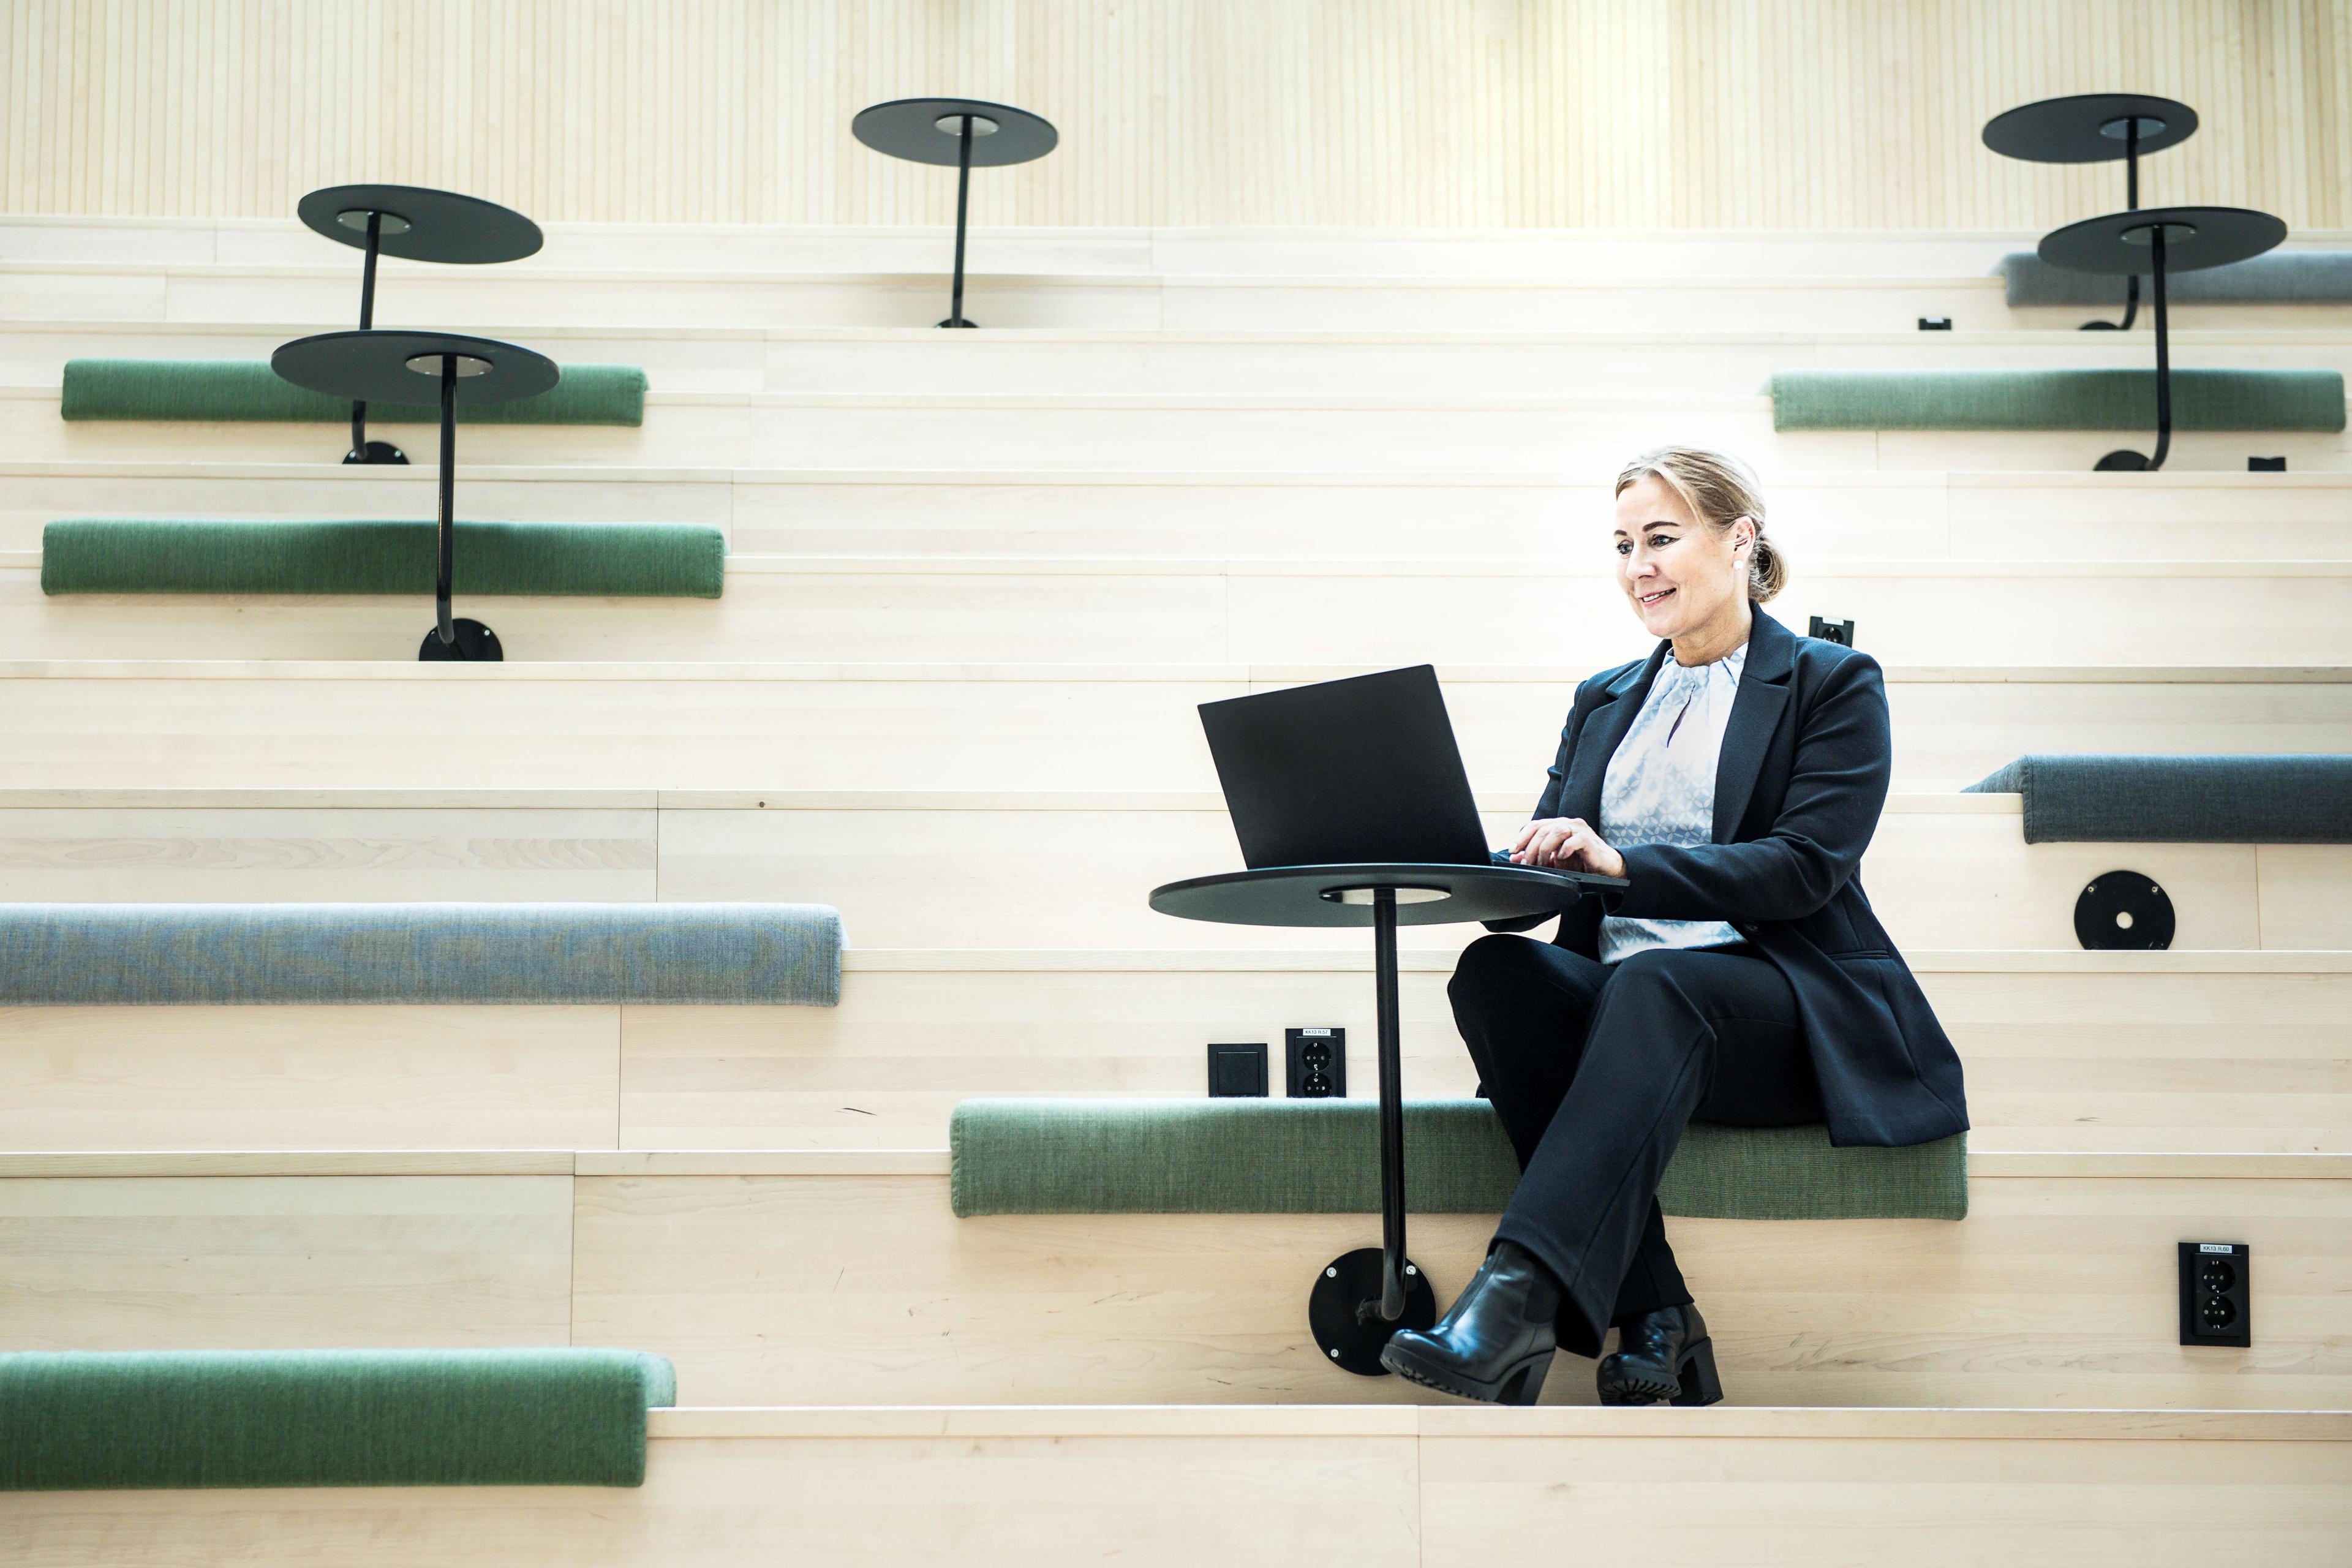 Tietokoneella työskentelevä vaaleahiuksinen nainen istuu skandinaavisen tyylisessä vaaleaa puuta olevassa portaikossa, jossa on vihreän sävyisiä istuinpehmusteita. Vaaleaan paitaan, tummiin housuihin ja jakkuun pukeutunut nainen katsoo suoraan tietokoneen näyttöön.